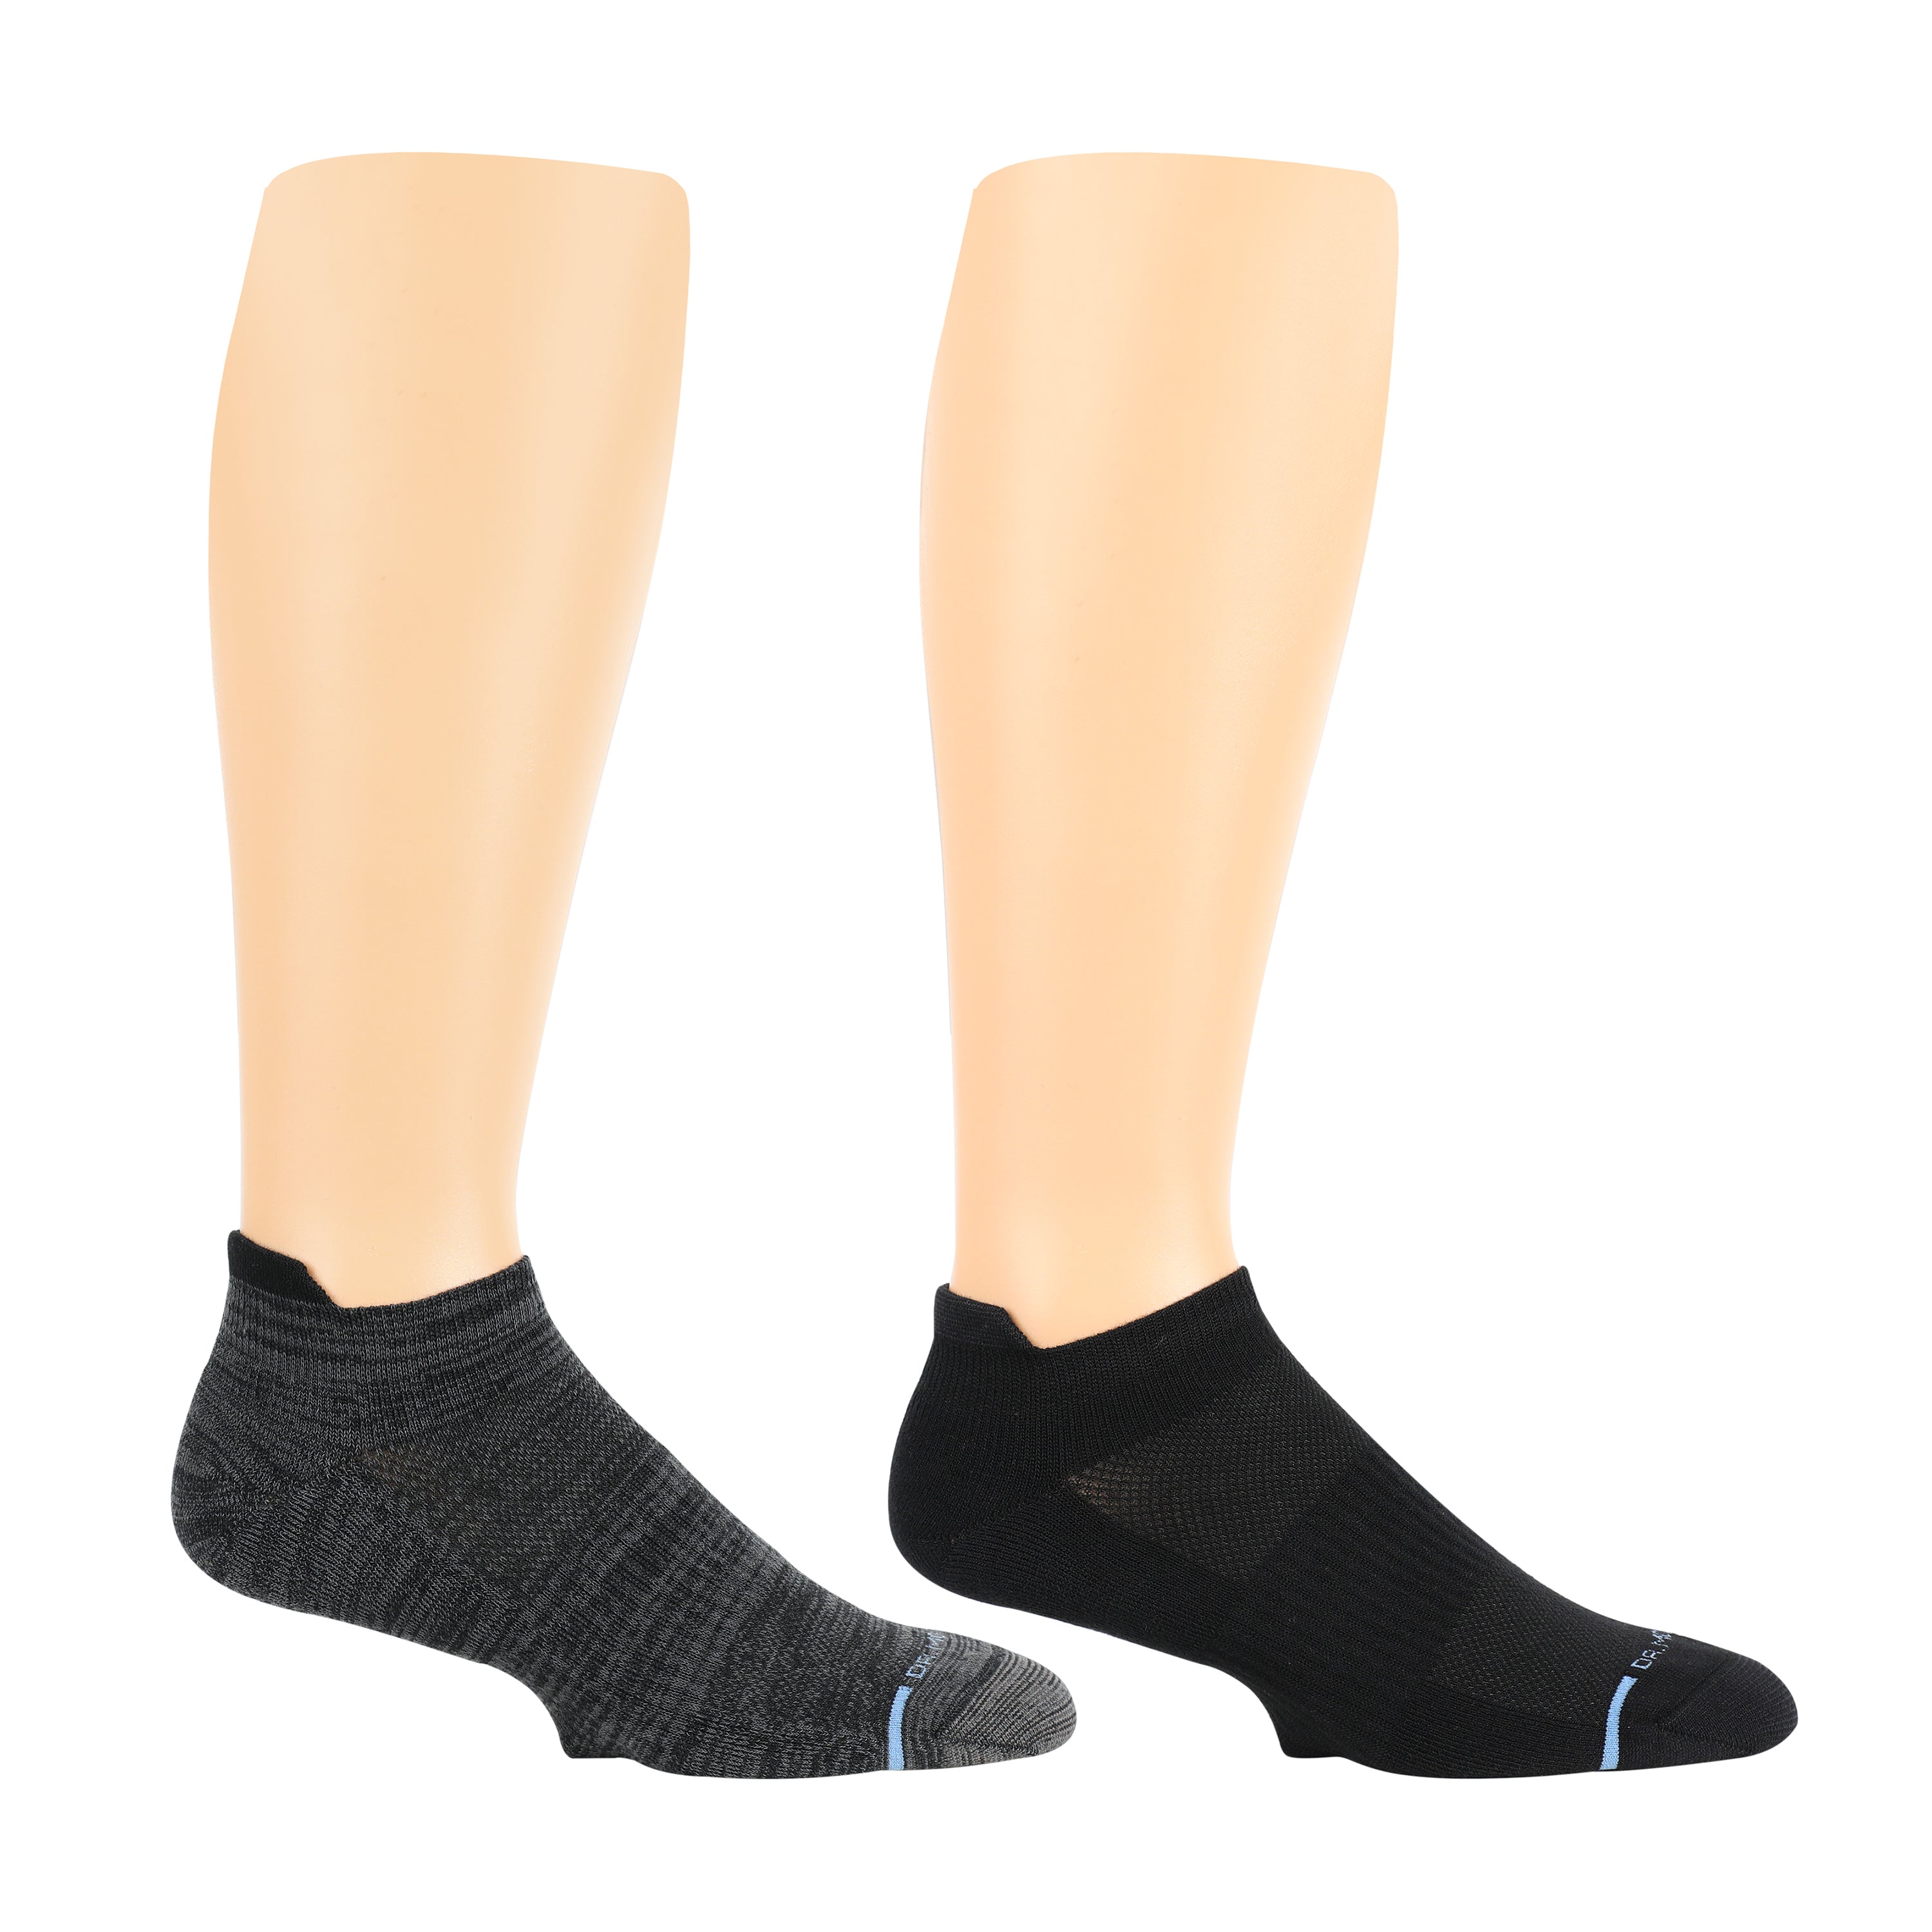 Shop All Men's  Dr. Motion Compression Socks